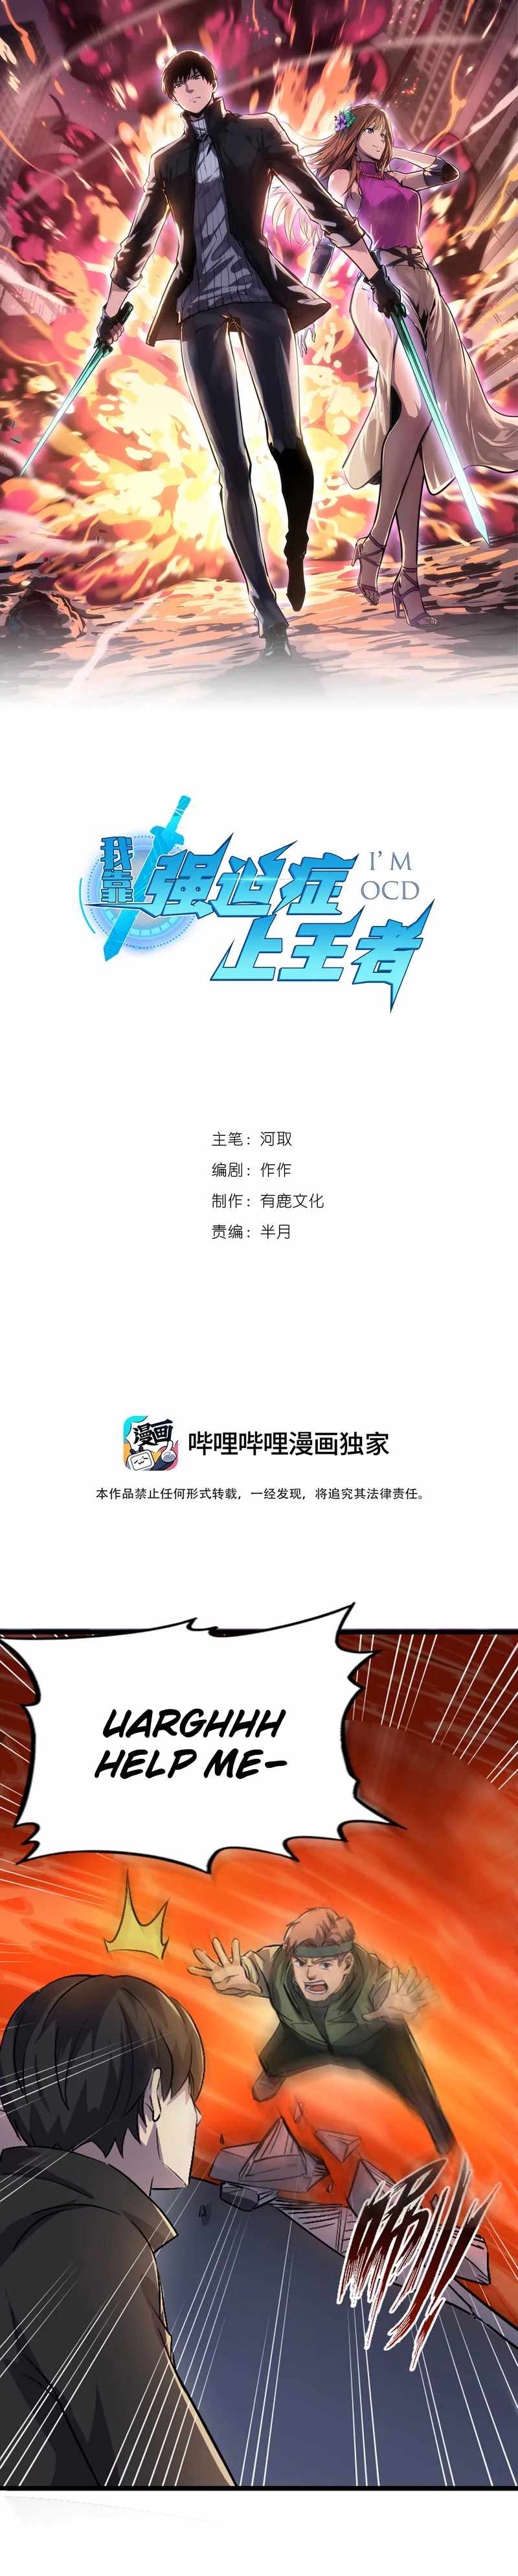 Wo Kao Qiangpo Zheng Shang Wangzhe - 50 page 1-140cedd6